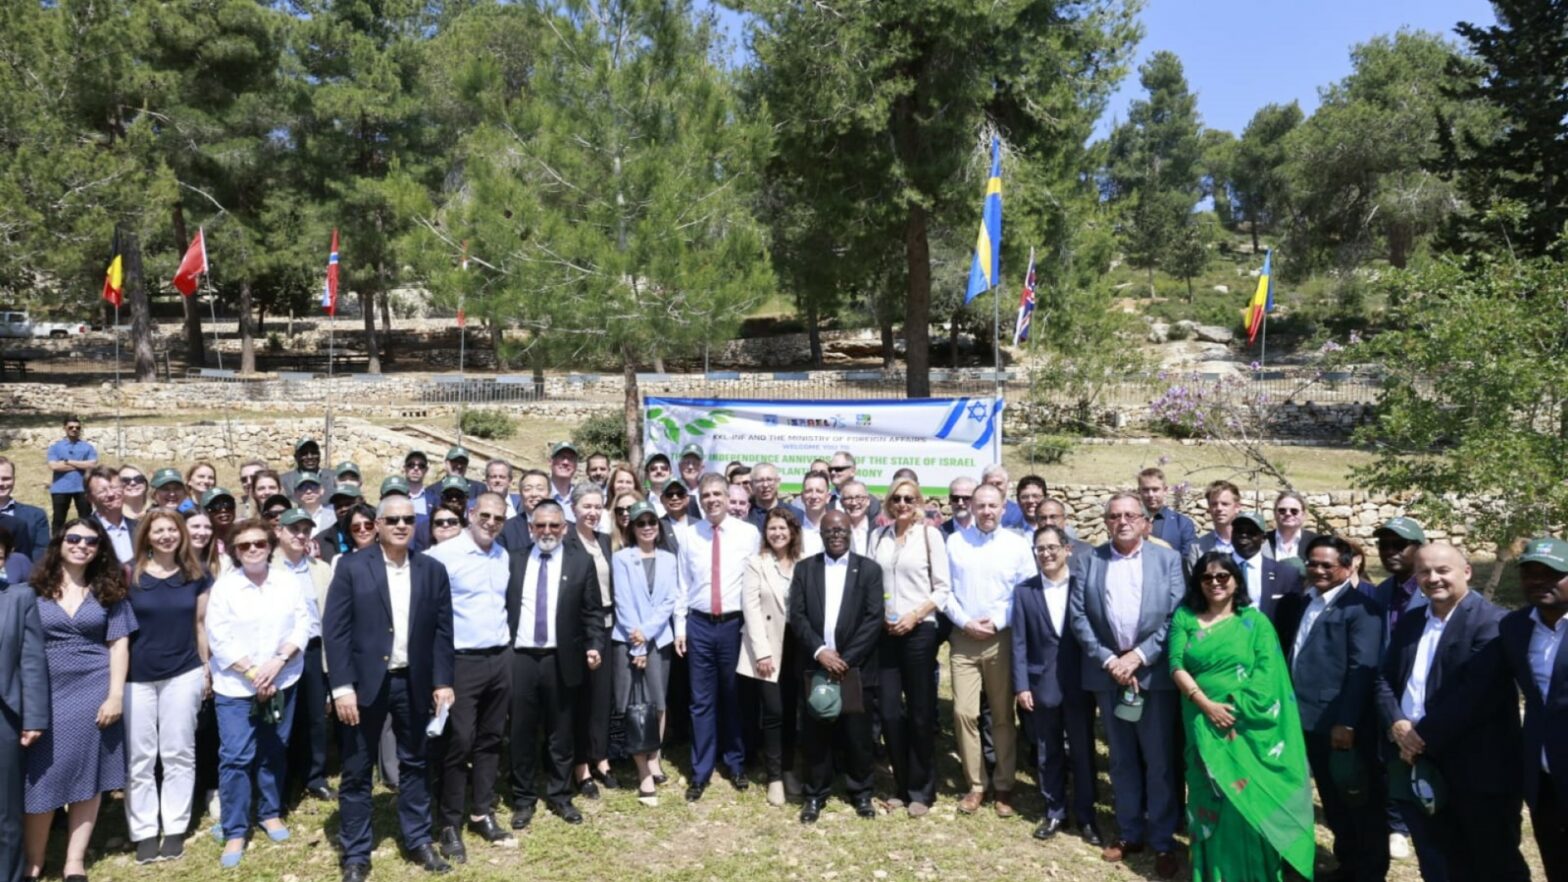 75 diplomaten planten 75 bomen voor Israëls 75ste verjaardag